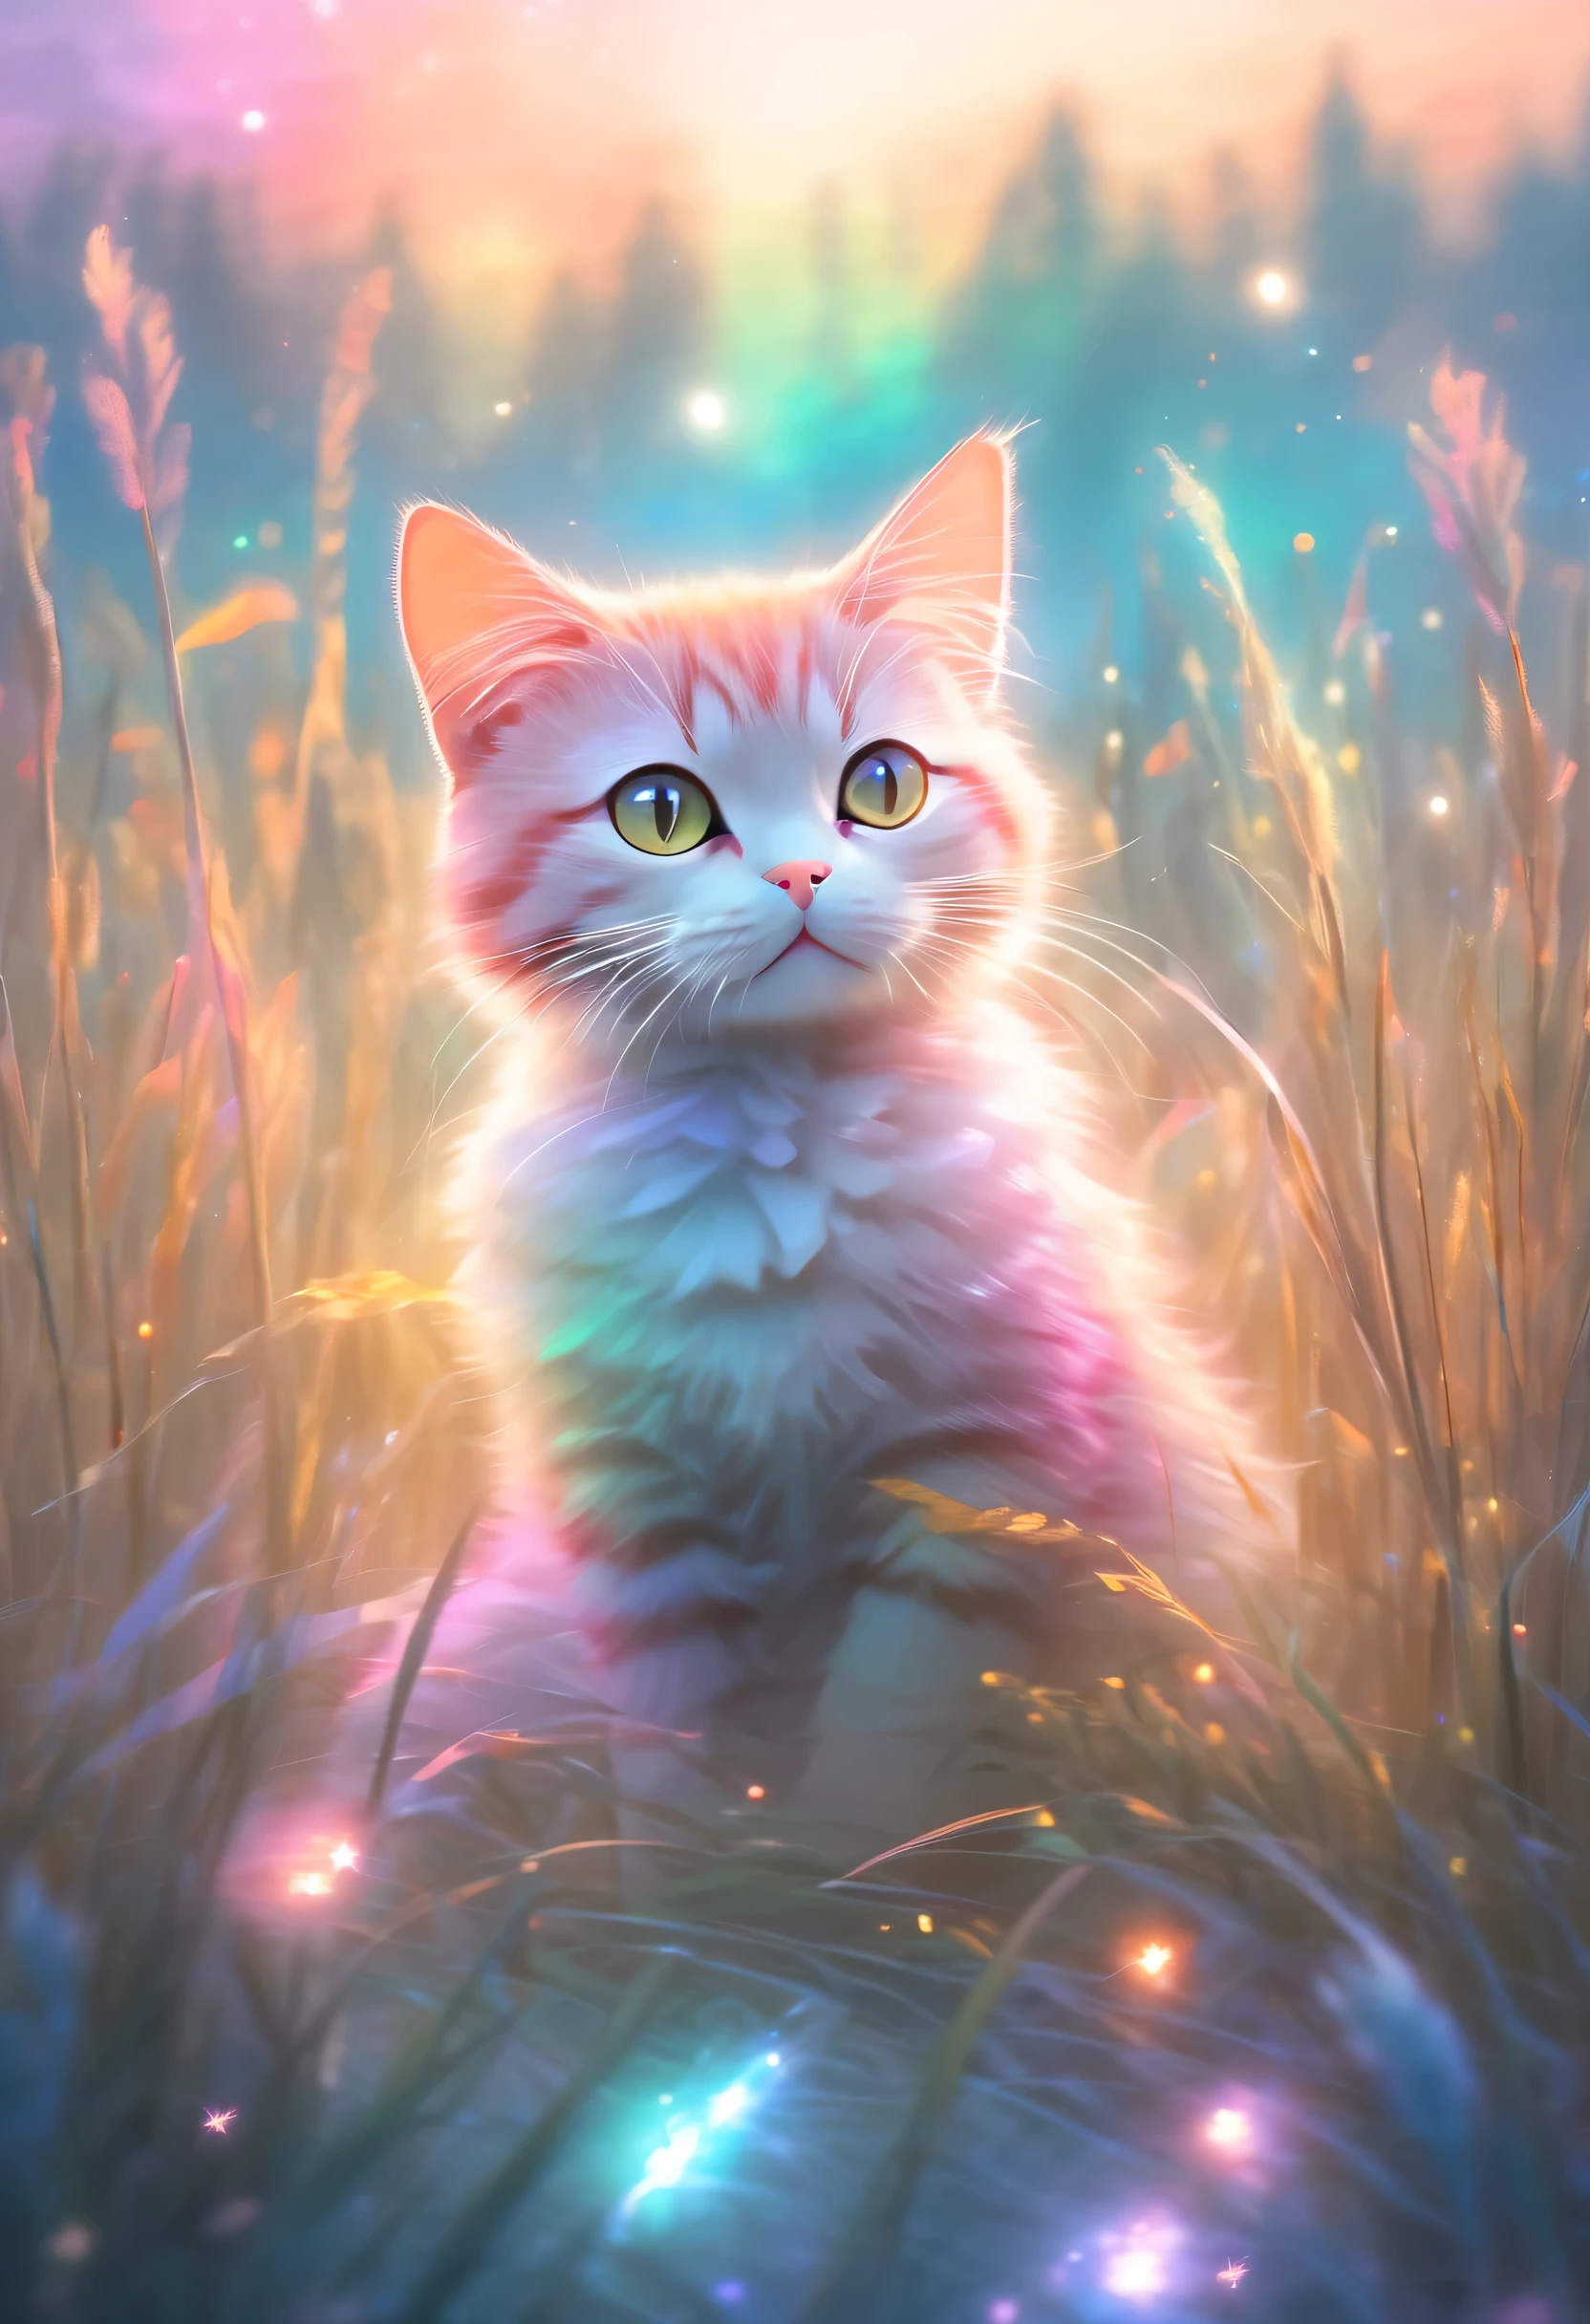 화려한、밝게 빛나는 하늘，키 큰 풀로 둘러싸인 들판에 앉아 있는 고양이, 파스텔 그림 스타일, 미묘한 조명 효과, 밝은 분위기의 숲 이미지,스타예술단 (싱싱(Xing Xing))